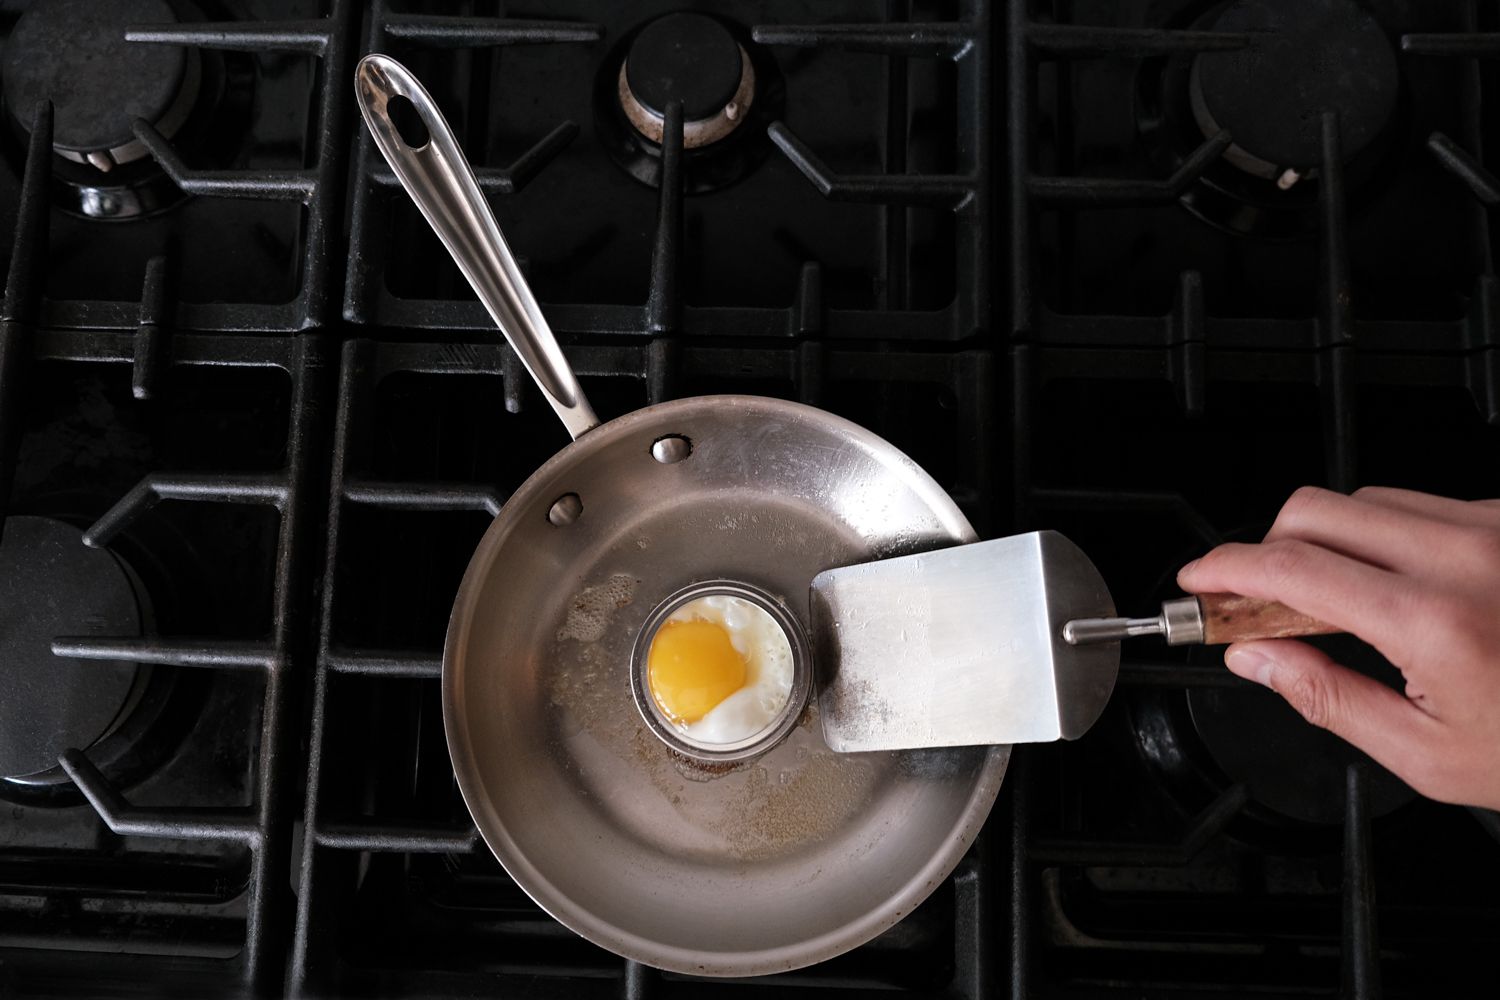 la tapa de una lata vieja se utiliza como soporte para huevos en una sartén de acero sobre la estufa